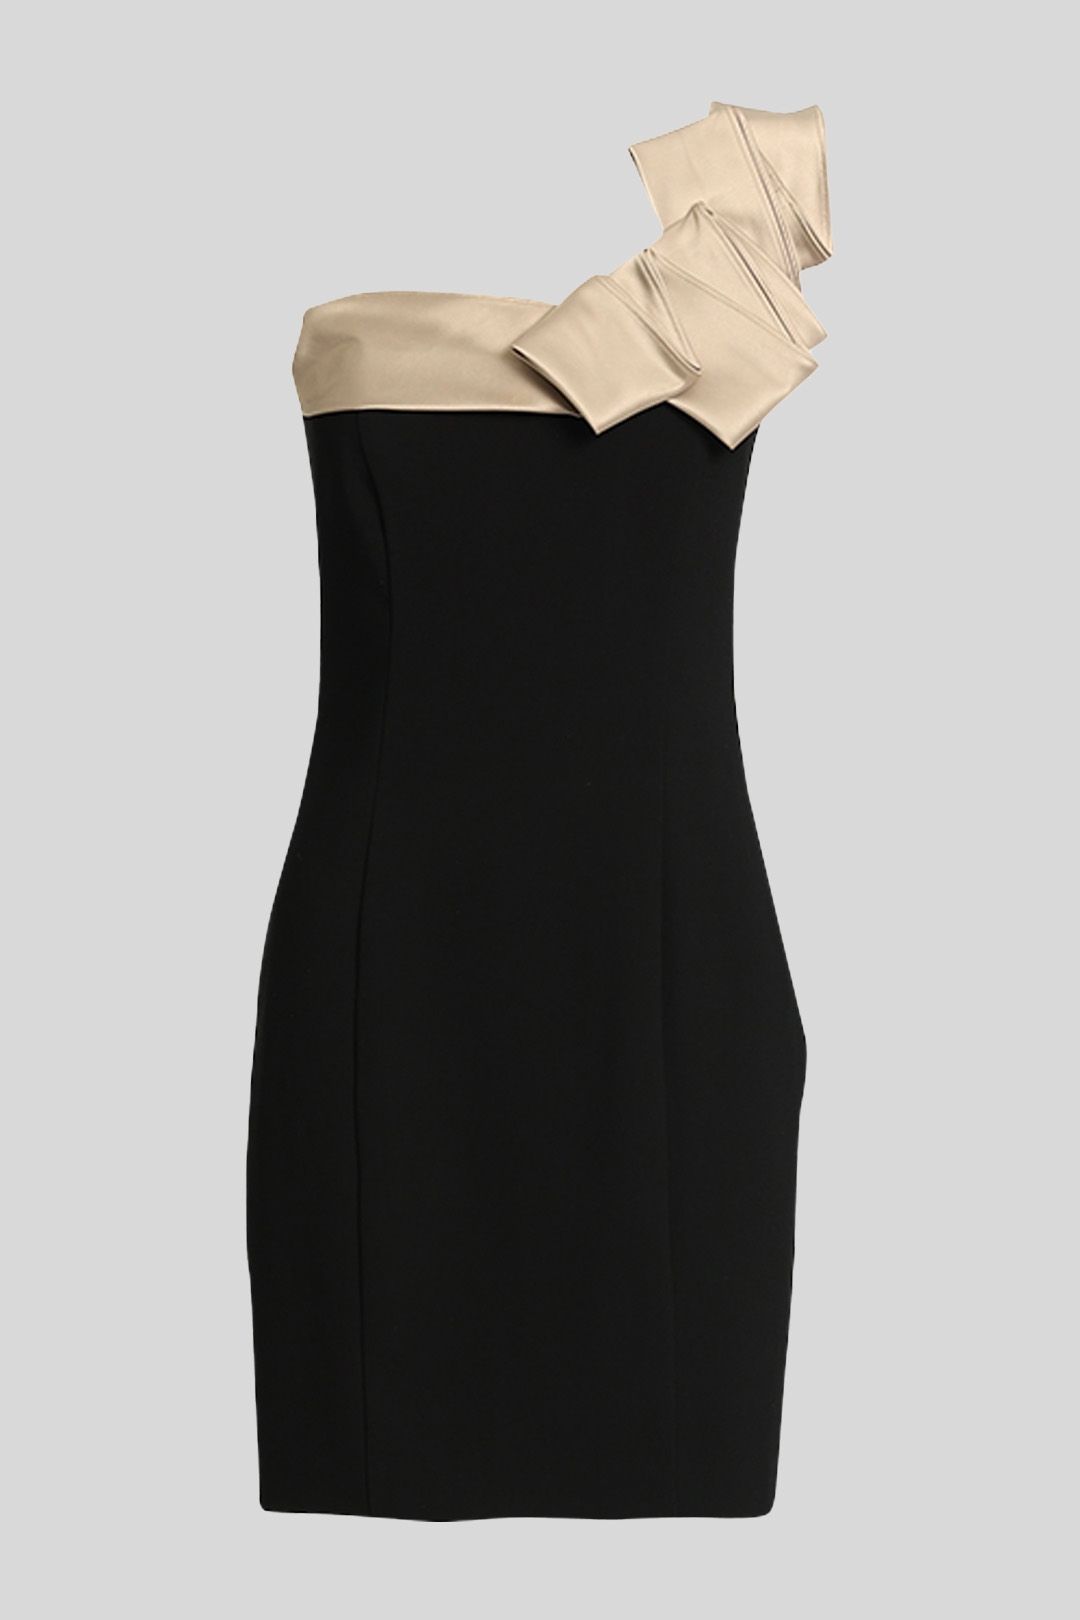 Review - One Shoulder Little Black Dress